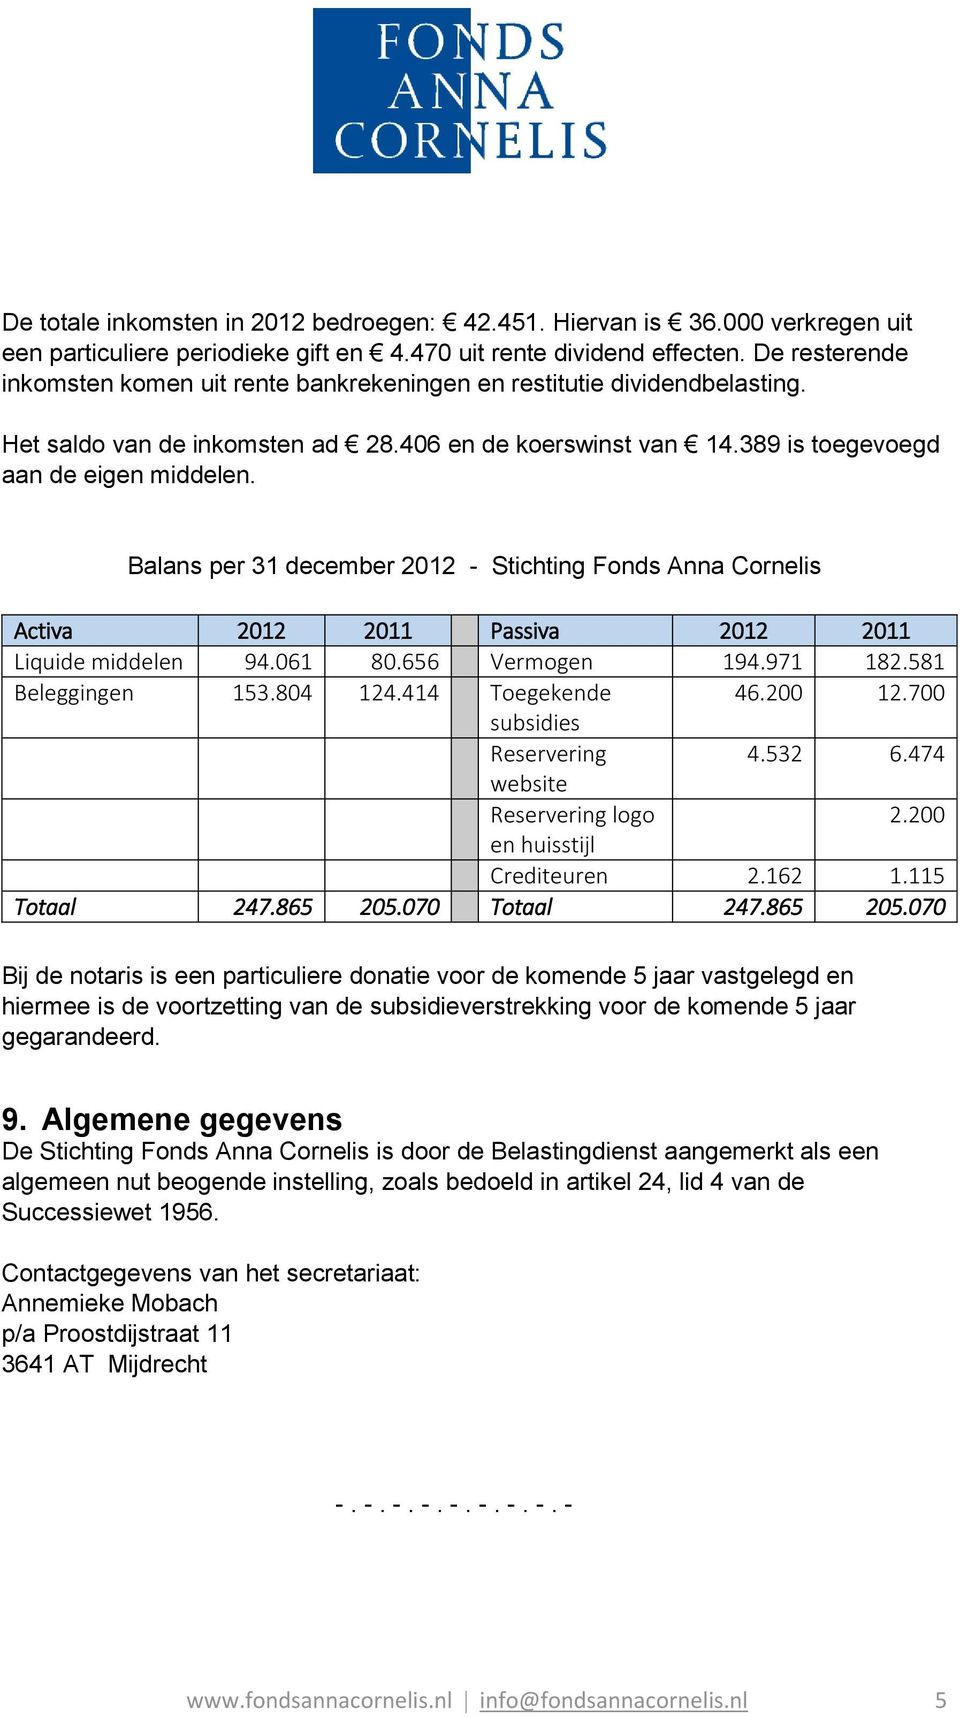 Balans per 31 december 2012 - Stichting Fonds Anna Cornelis Activa 2012 2011 Passiva 2012 2011 Liquide middelen 94.061 80.656 Vermogen 194.971 182.581 Beleggingen 153.804 124.414 Toegekende 46.200 12.